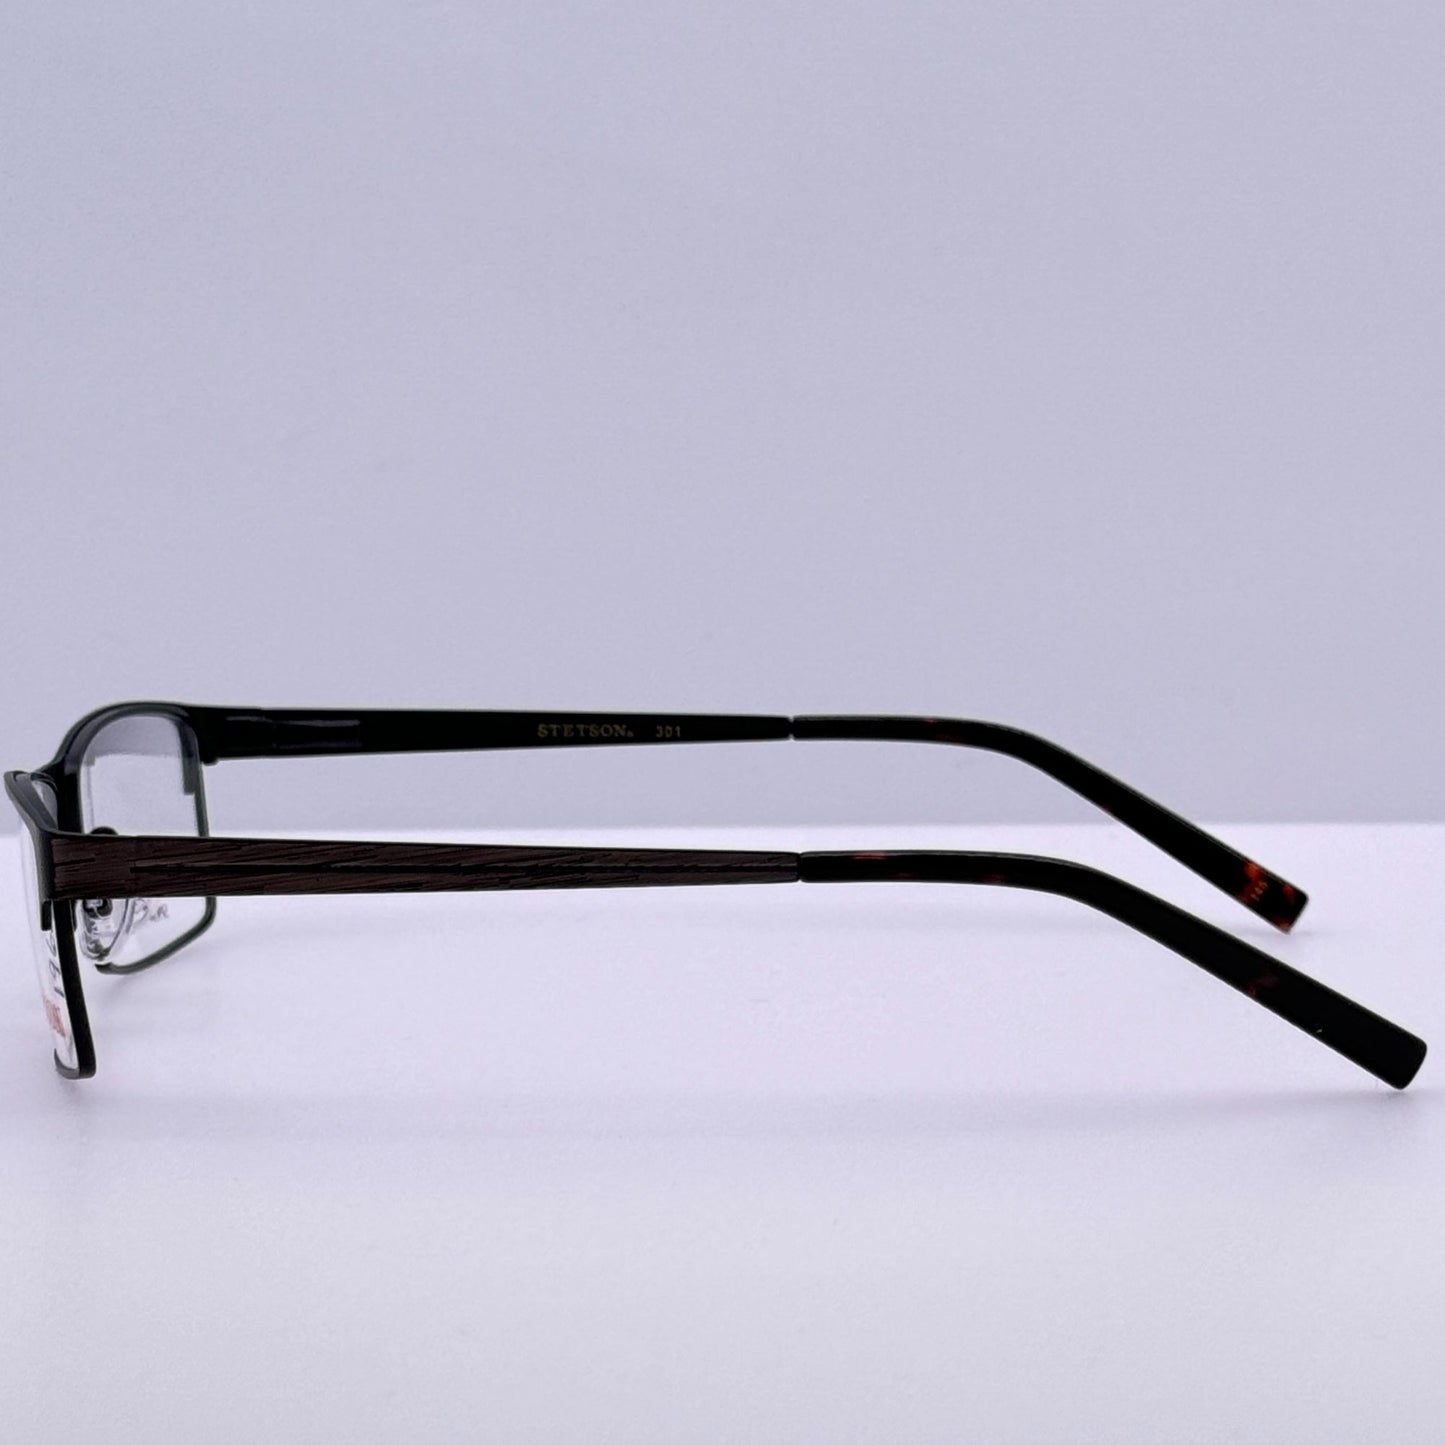 Stetson Eyeglasses Eye Glasses Frames ST 301 058 55-16-145